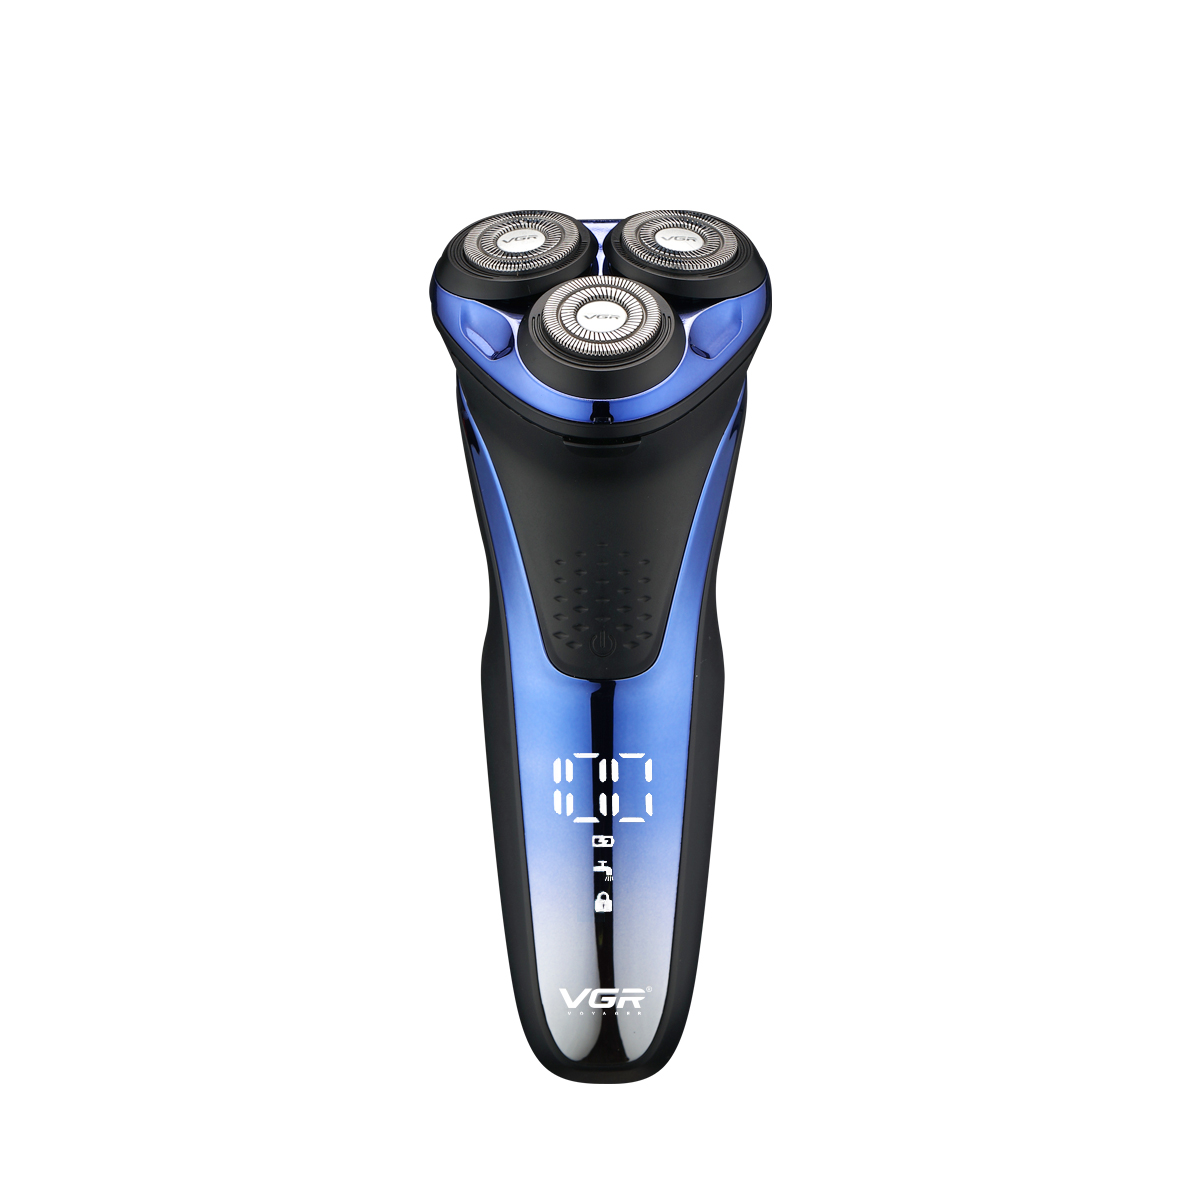 VGR V-306 electric shaver washable waterproof IPX7 for men household with LED light shaver men